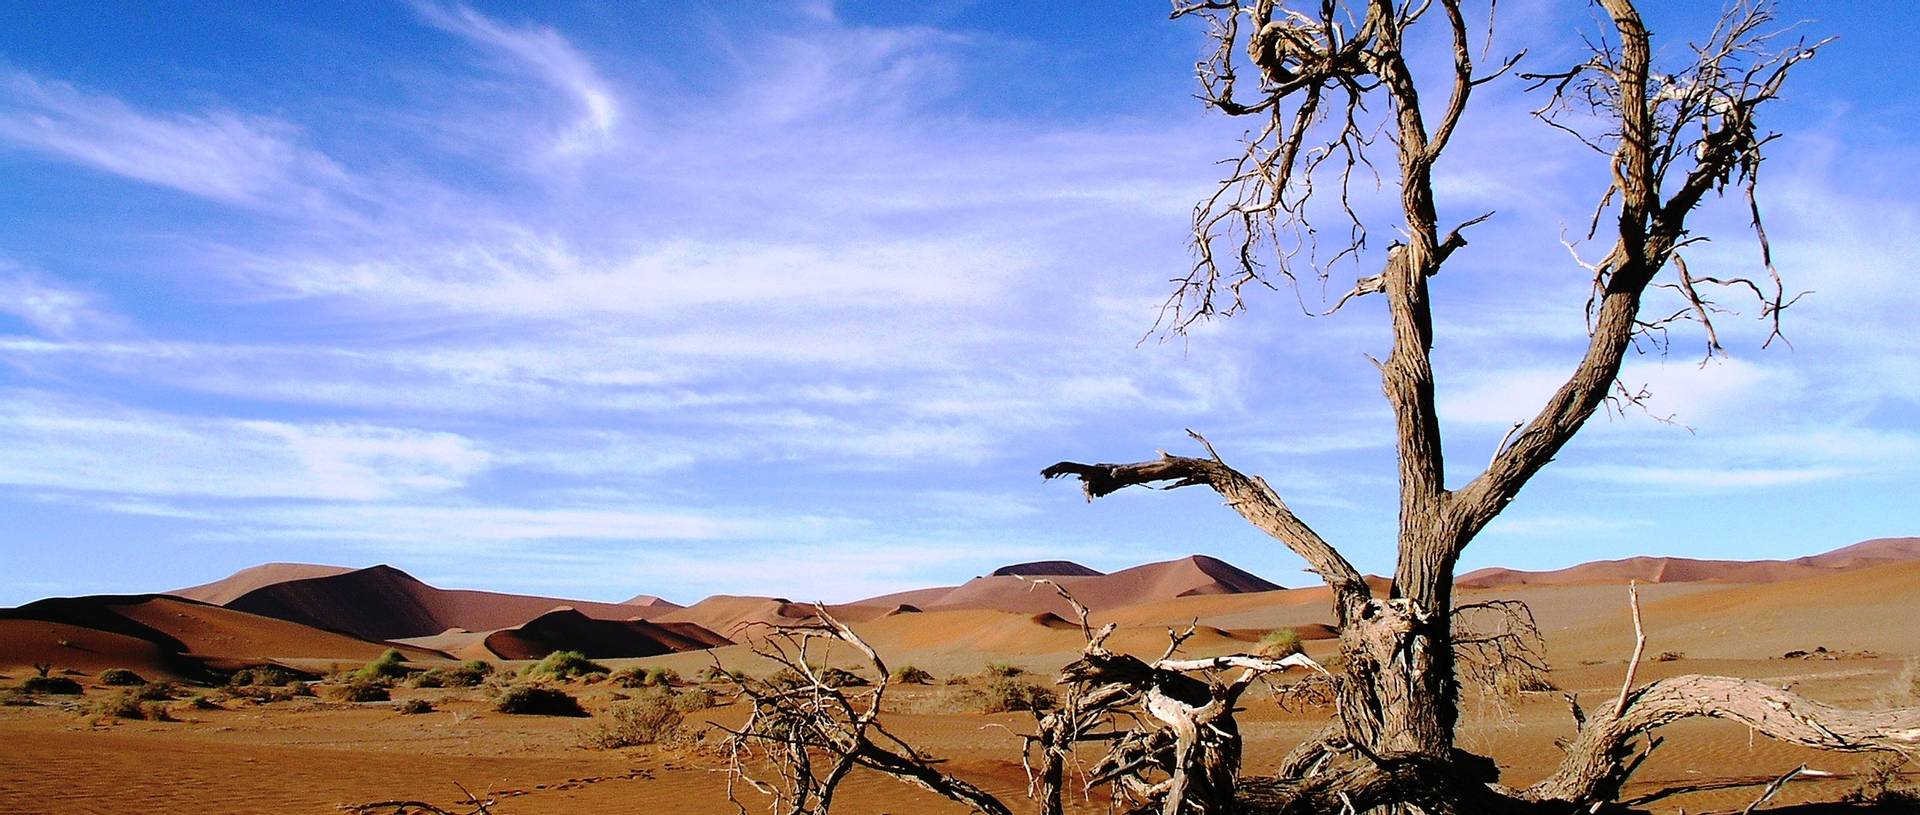 Namib Nauklaft National Park